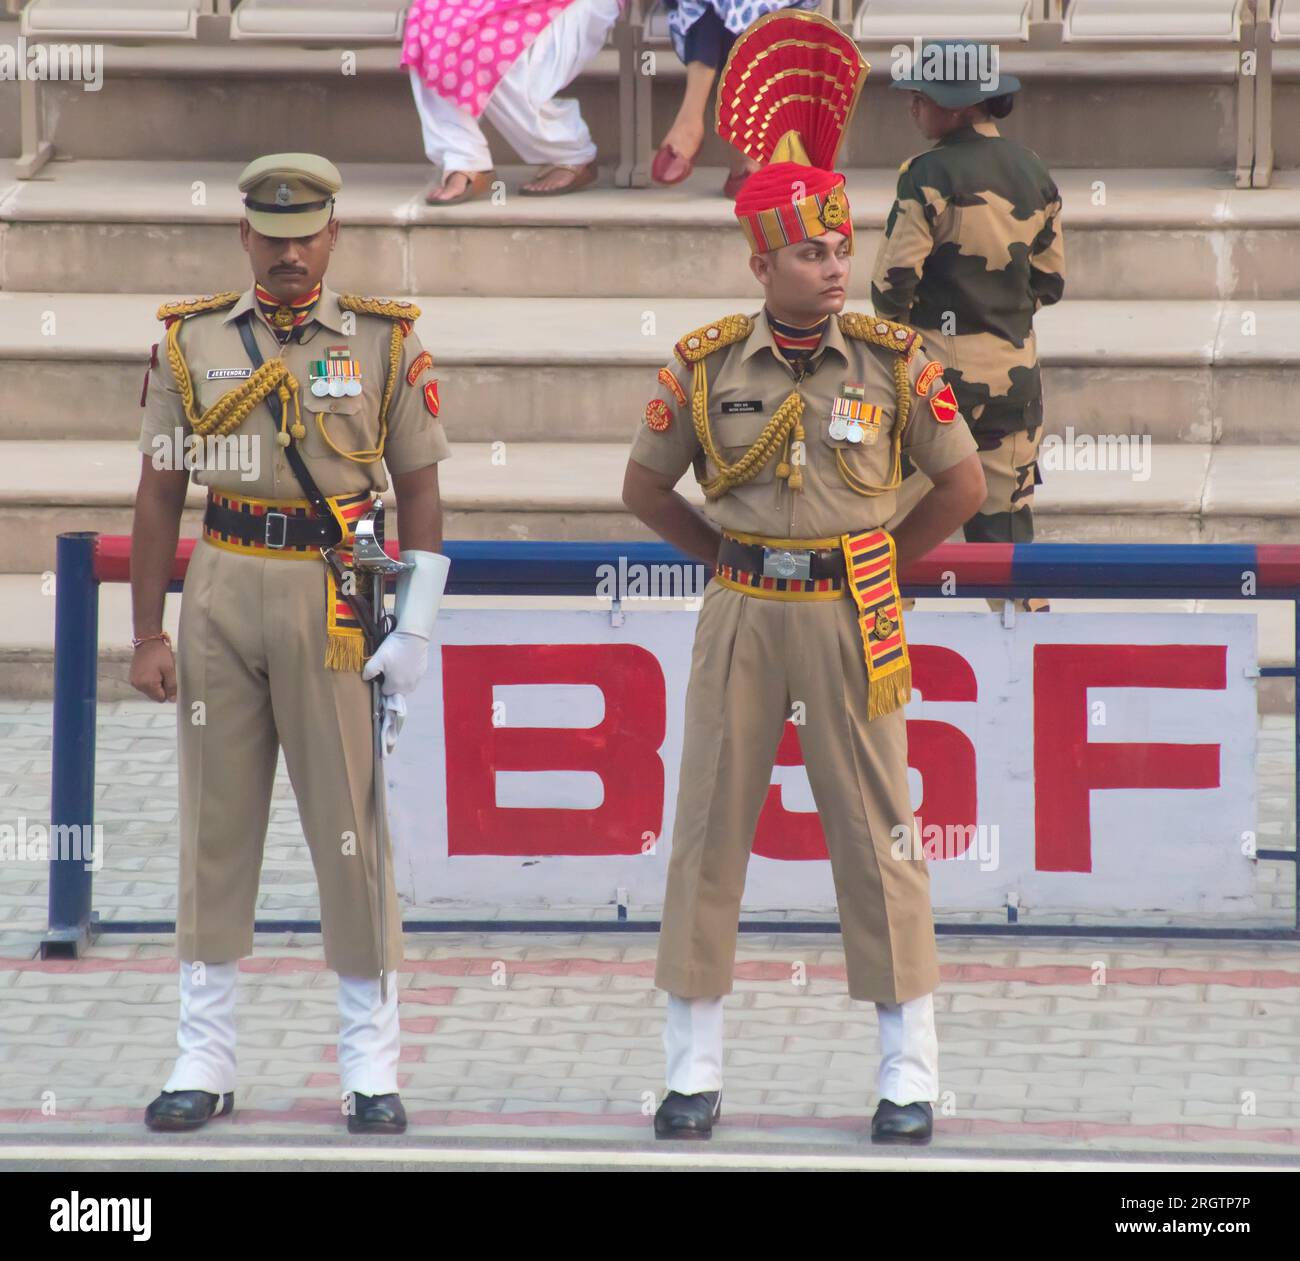 Indian soldiers at border at Waga, Rajasthan, India Stock Photo